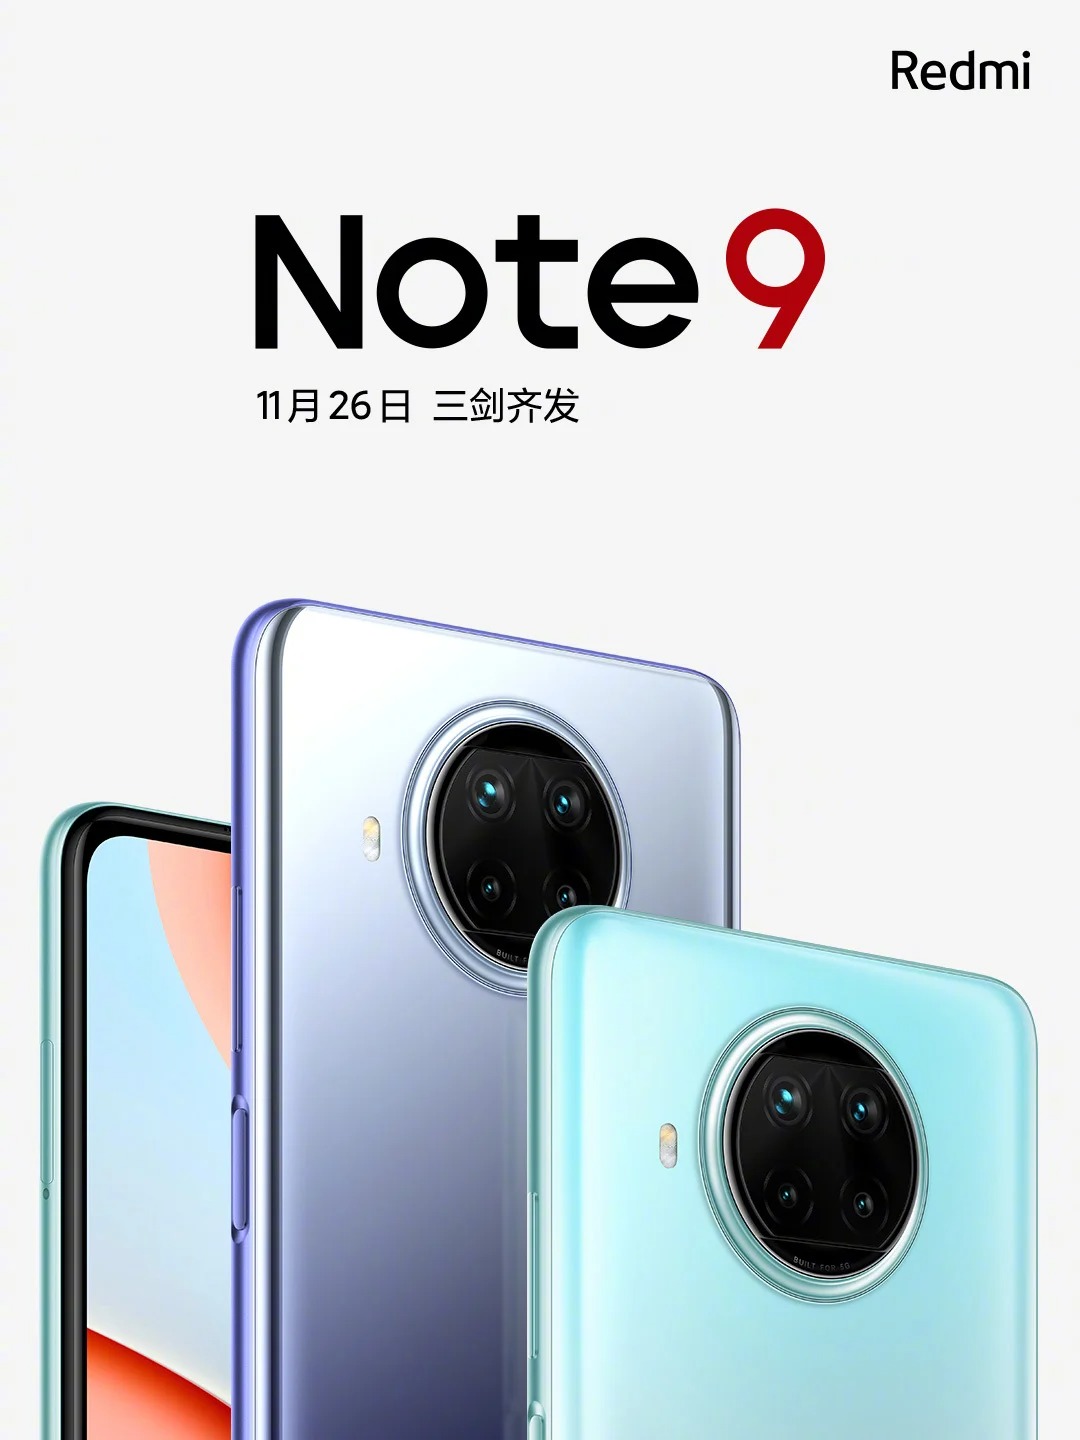 Redmi Note 9 5G series sẽ chính thức ra mắt vào ngày 26 tháng 11